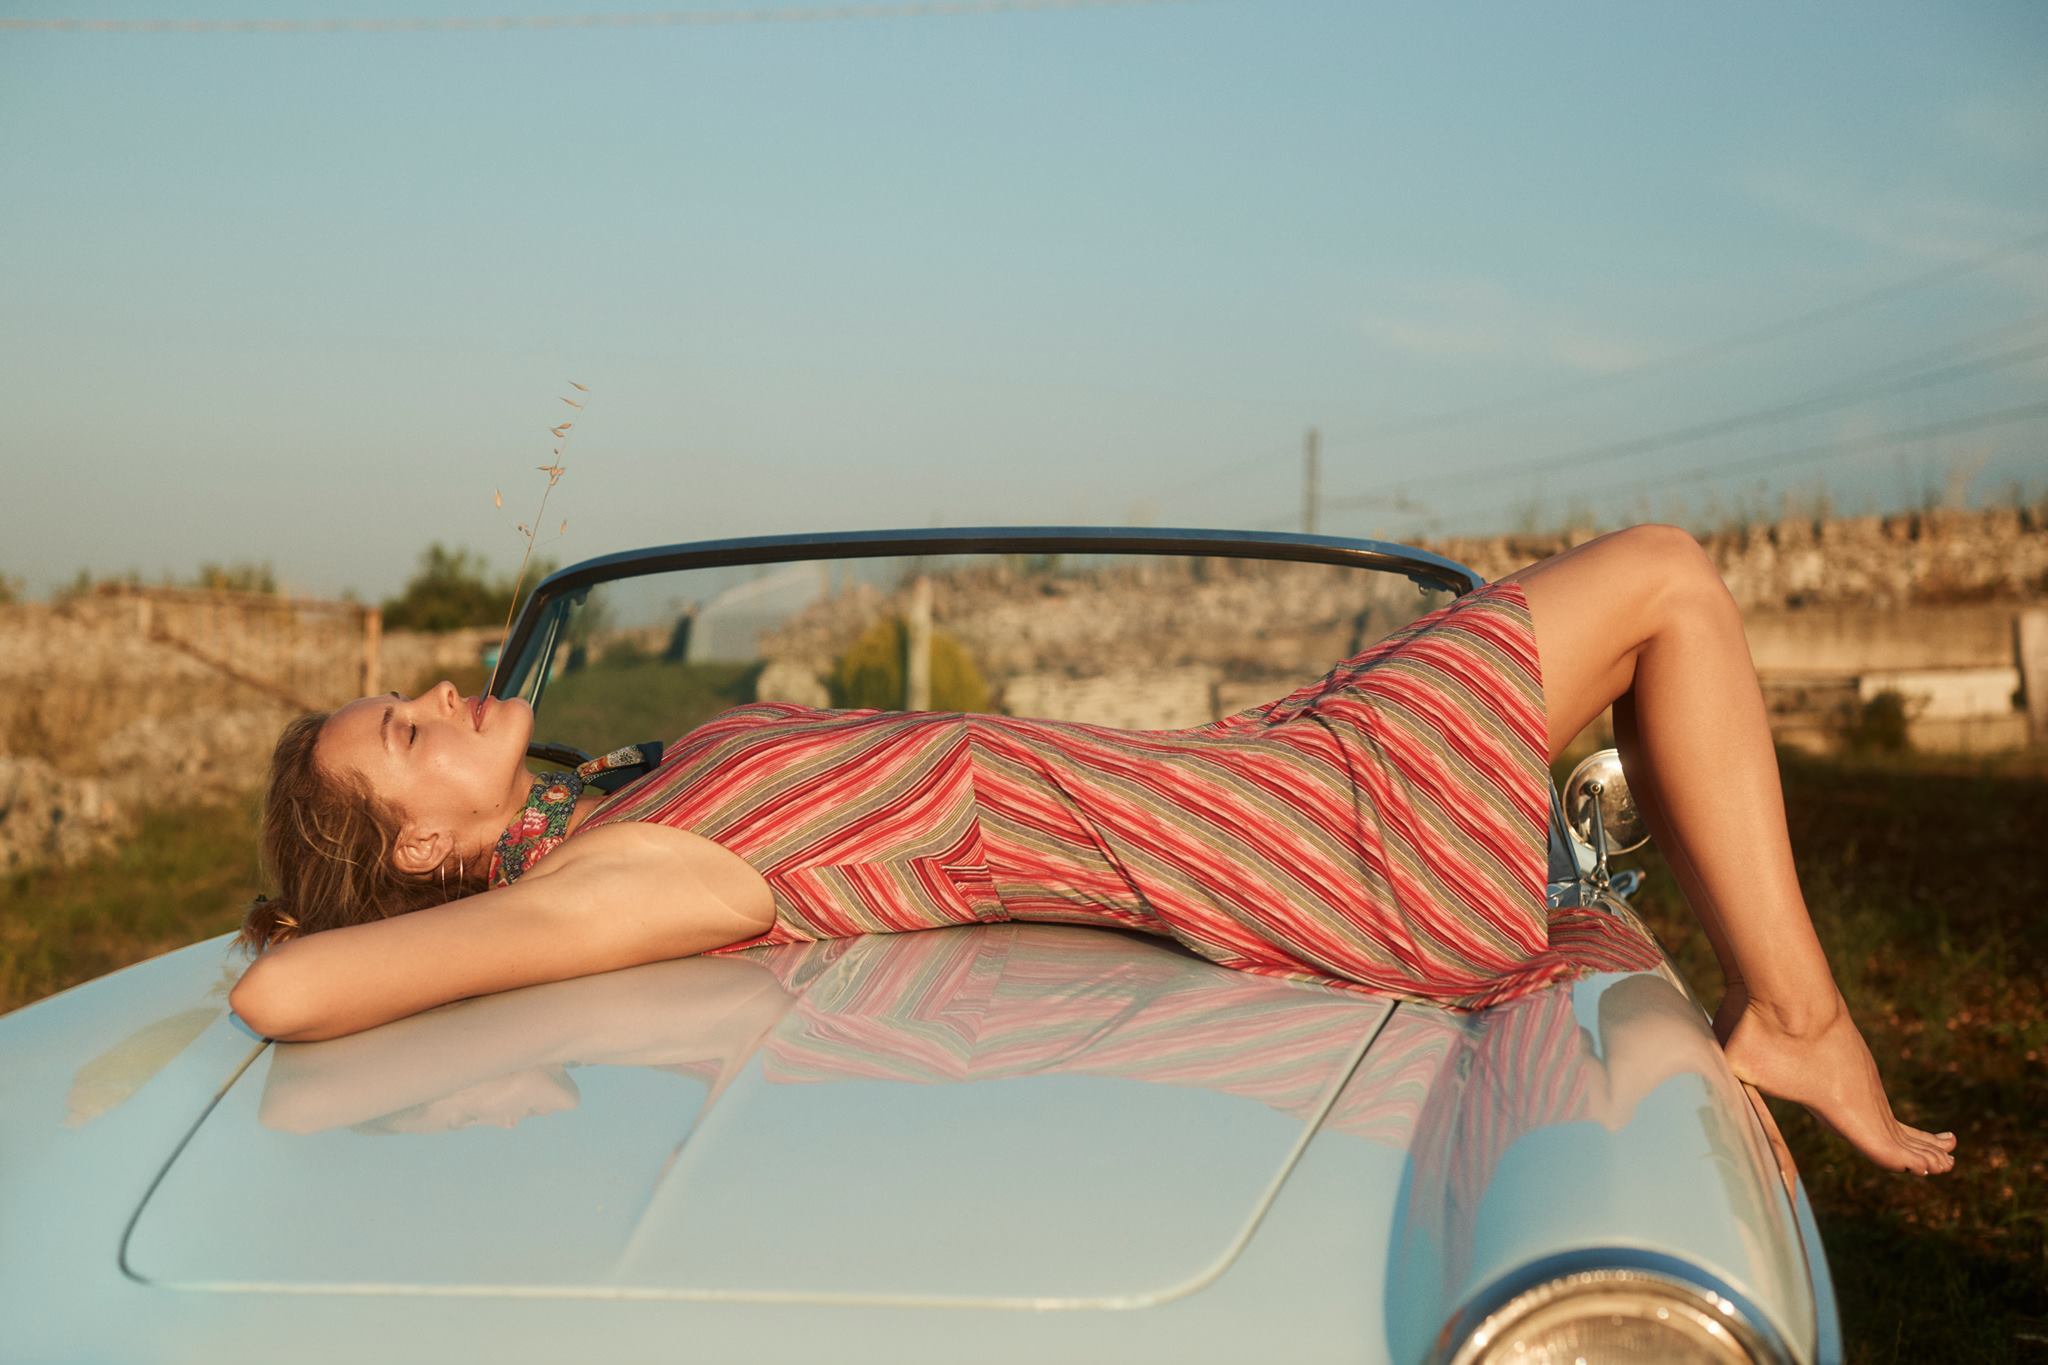 Похожим на женский капот. Девушка лежит на машине. Лежит на капоте. Девушка лежит на капоте. Девушка на капоте автомобиля.